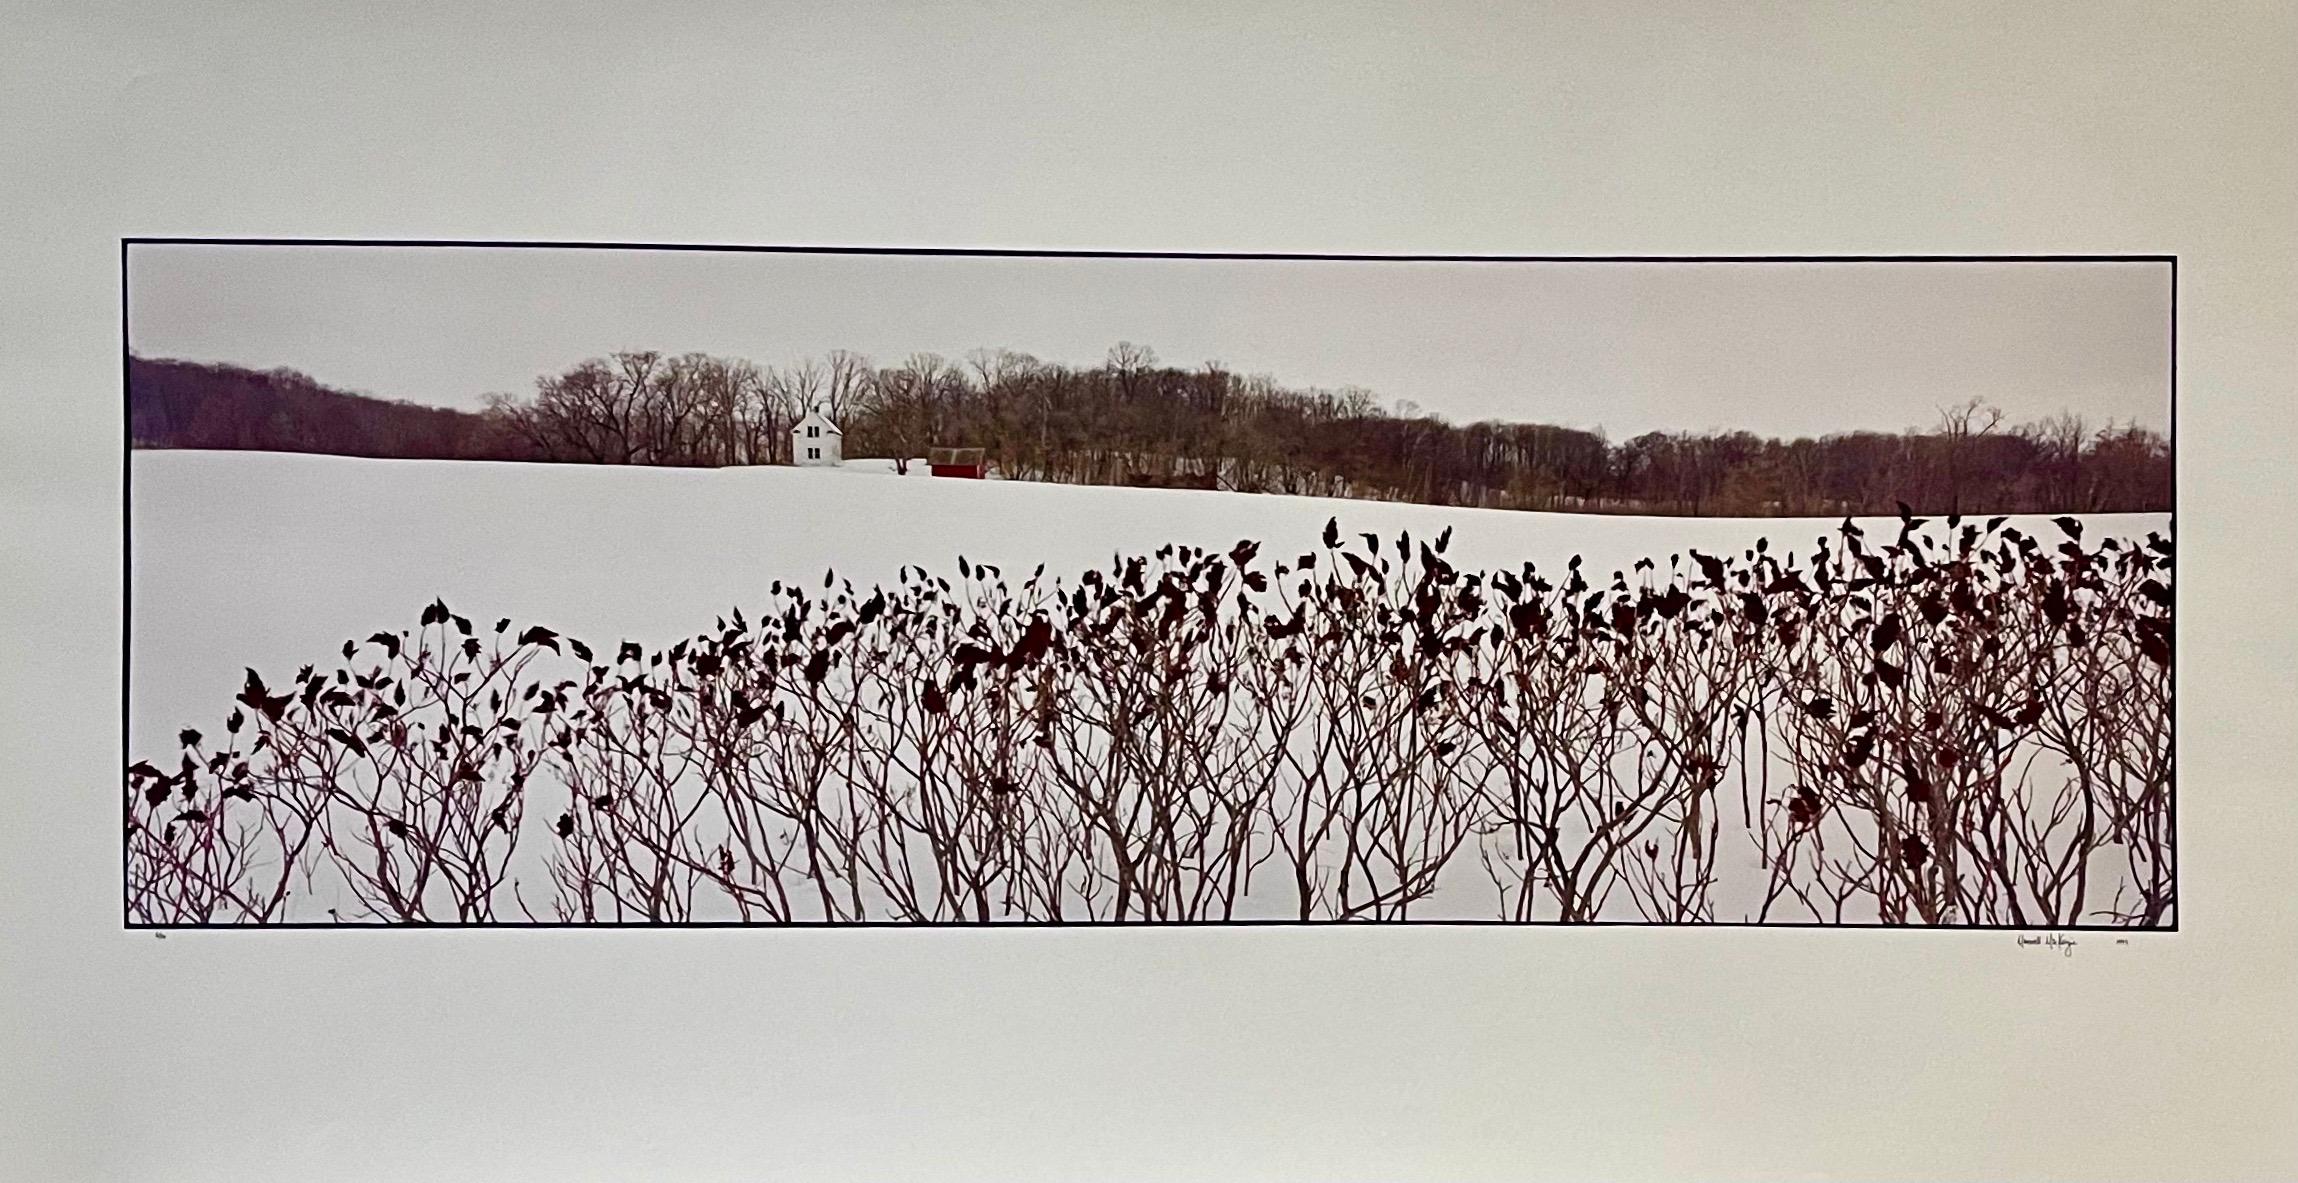 Color Photograph Maxwell Mackenzie - Paysage de ferme, paysage d'hiver, grande photographie couleur vintage en panneau, signée